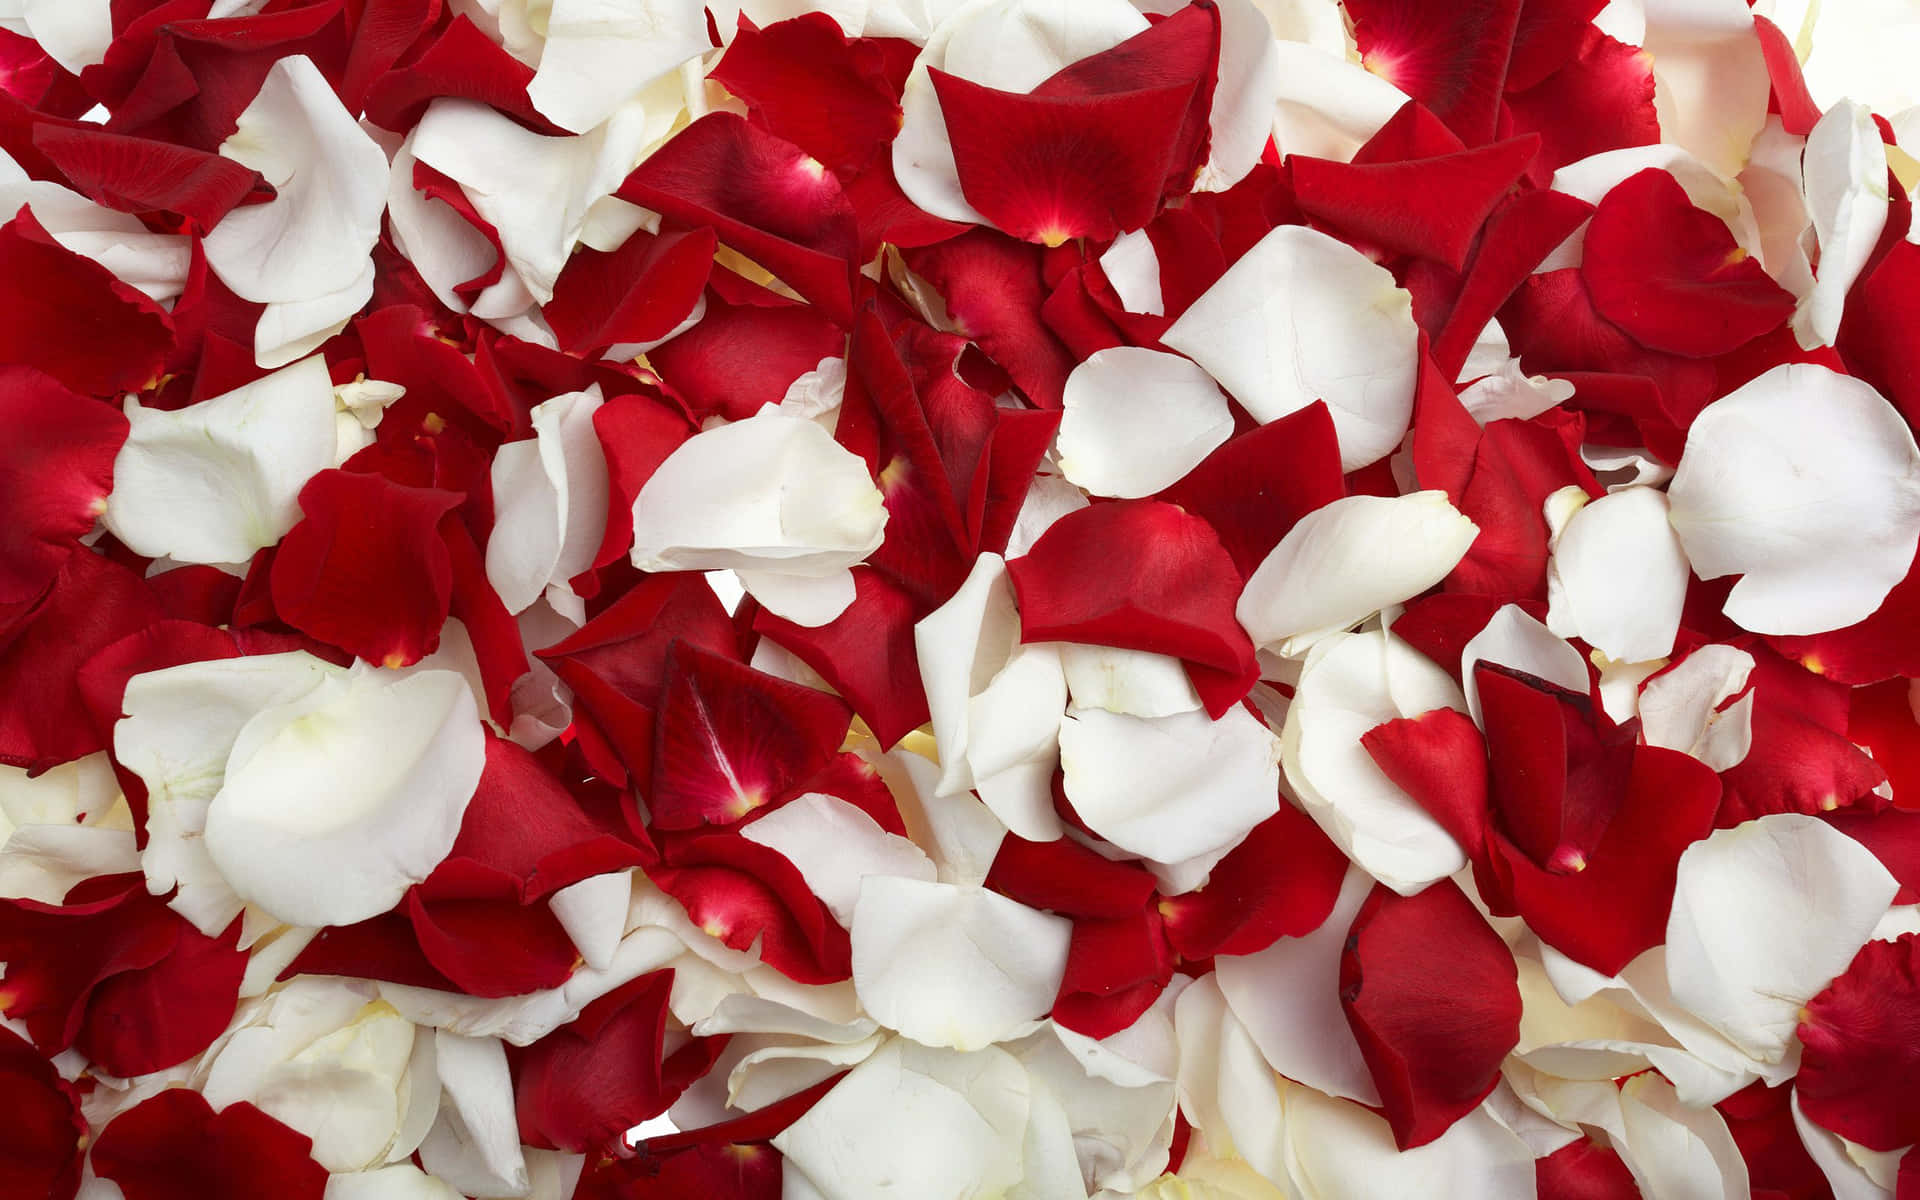 Knopper af røde og hvide roser skaber et smukt indramningsværk. Wallpaper